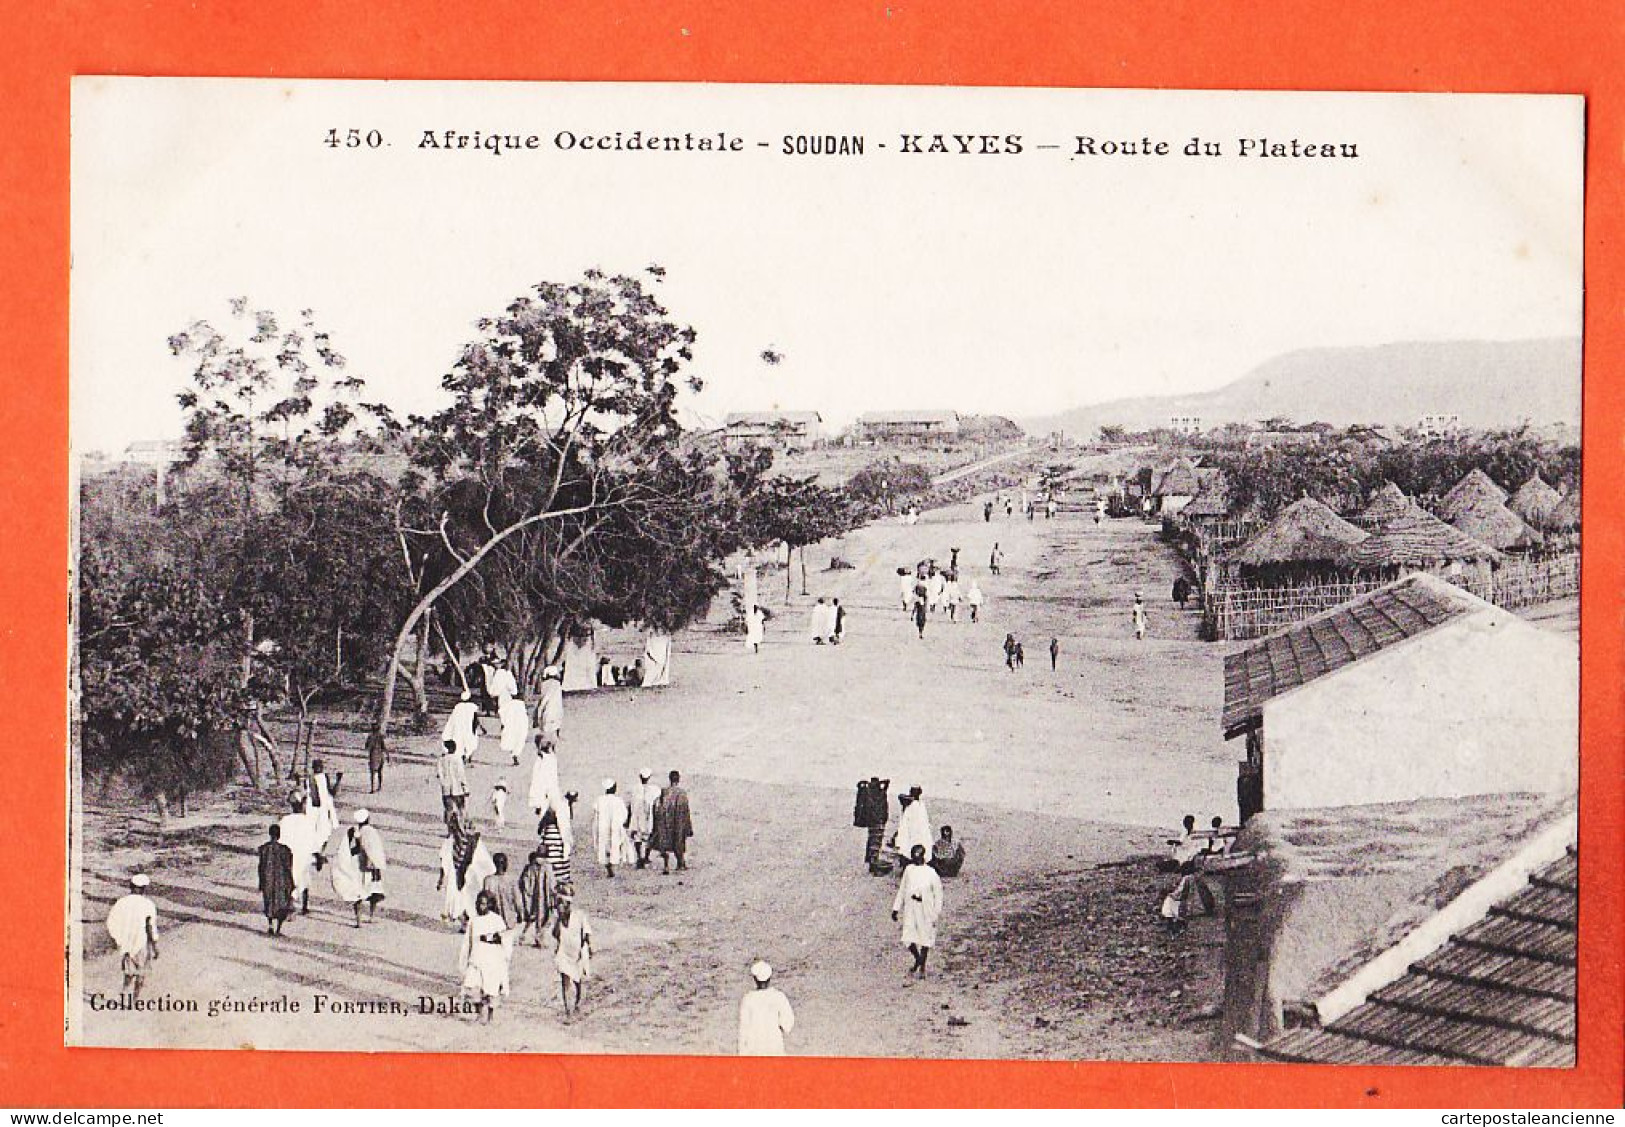 32977 / ⭐ KAYES Soudan (•◡•) Route Du Plateau 1910s ◉ Collection Generale FORTIER Dakar 450 Afrique Occidentale - Sudan